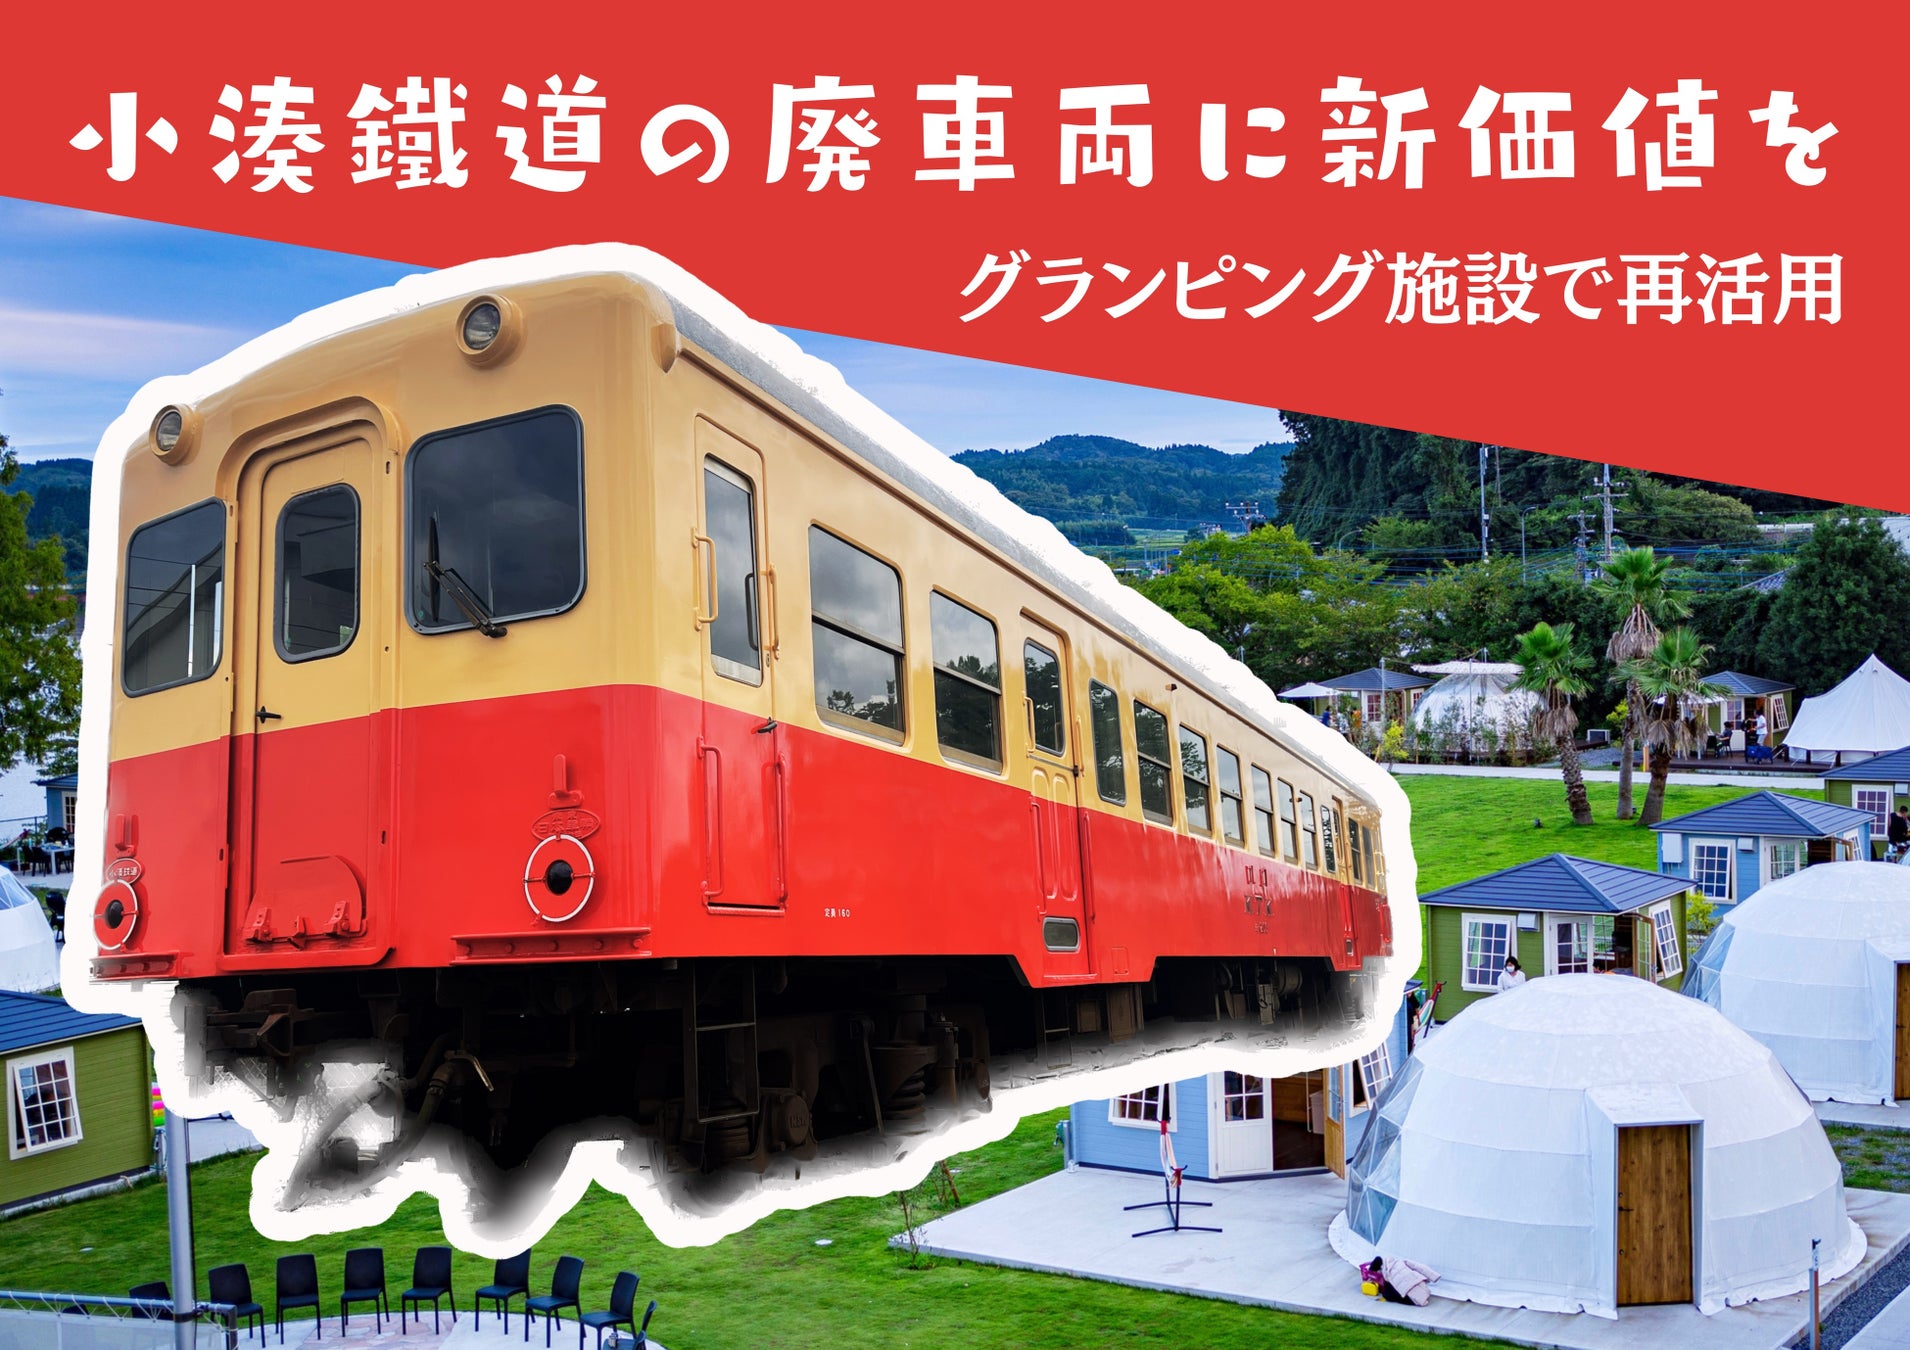 【廃車鉄道車両に新価値】小湊鐵道のキハ200形初の保存車両として、キハ203が安住の新転地、千葉県市原市の高滝湖グランピングリゾートへ。2023年5月1日より宿泊者向けに公開。